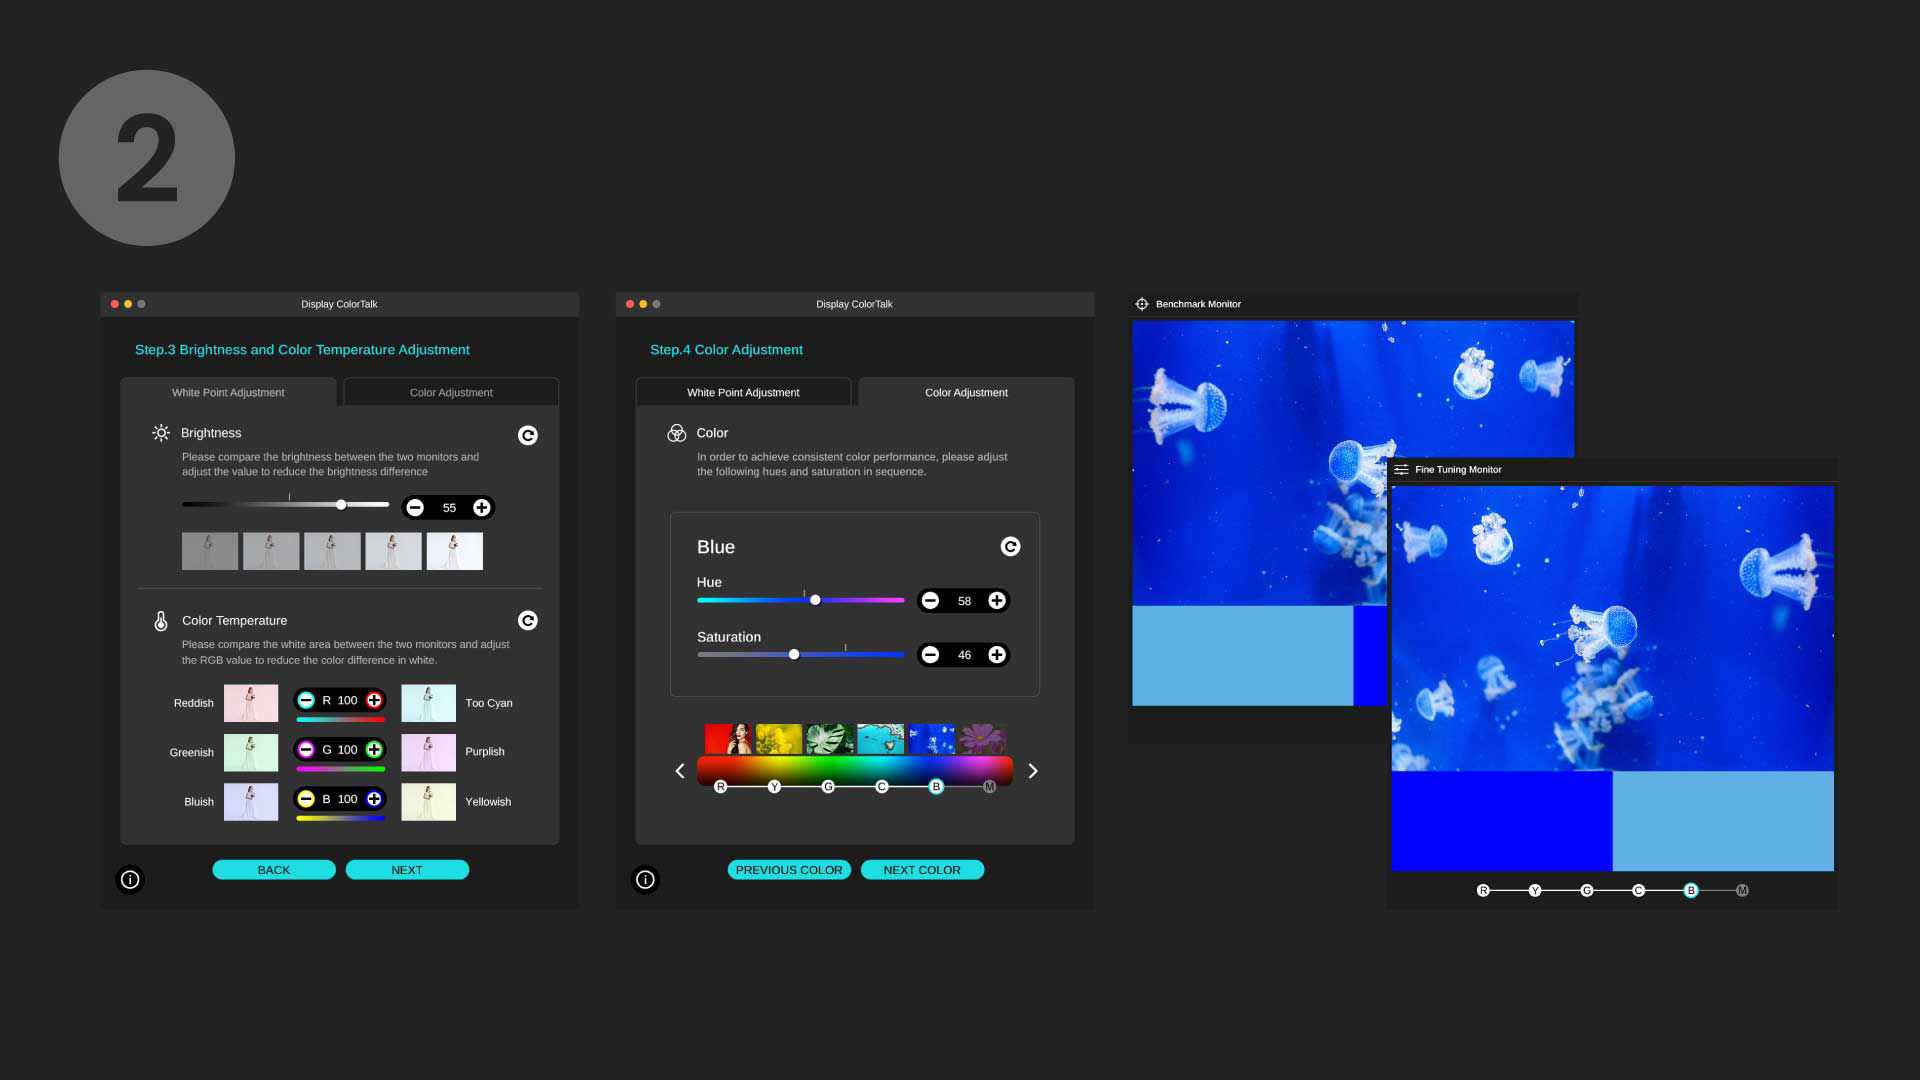 BenQ Програмне забезпечення Display ColorTalk полегшує синхронізацію кольорів на всіх моніторах лише кількома натисканнями. Заощаджуйте час і зусилля, зосереджуйтесь на креативності.